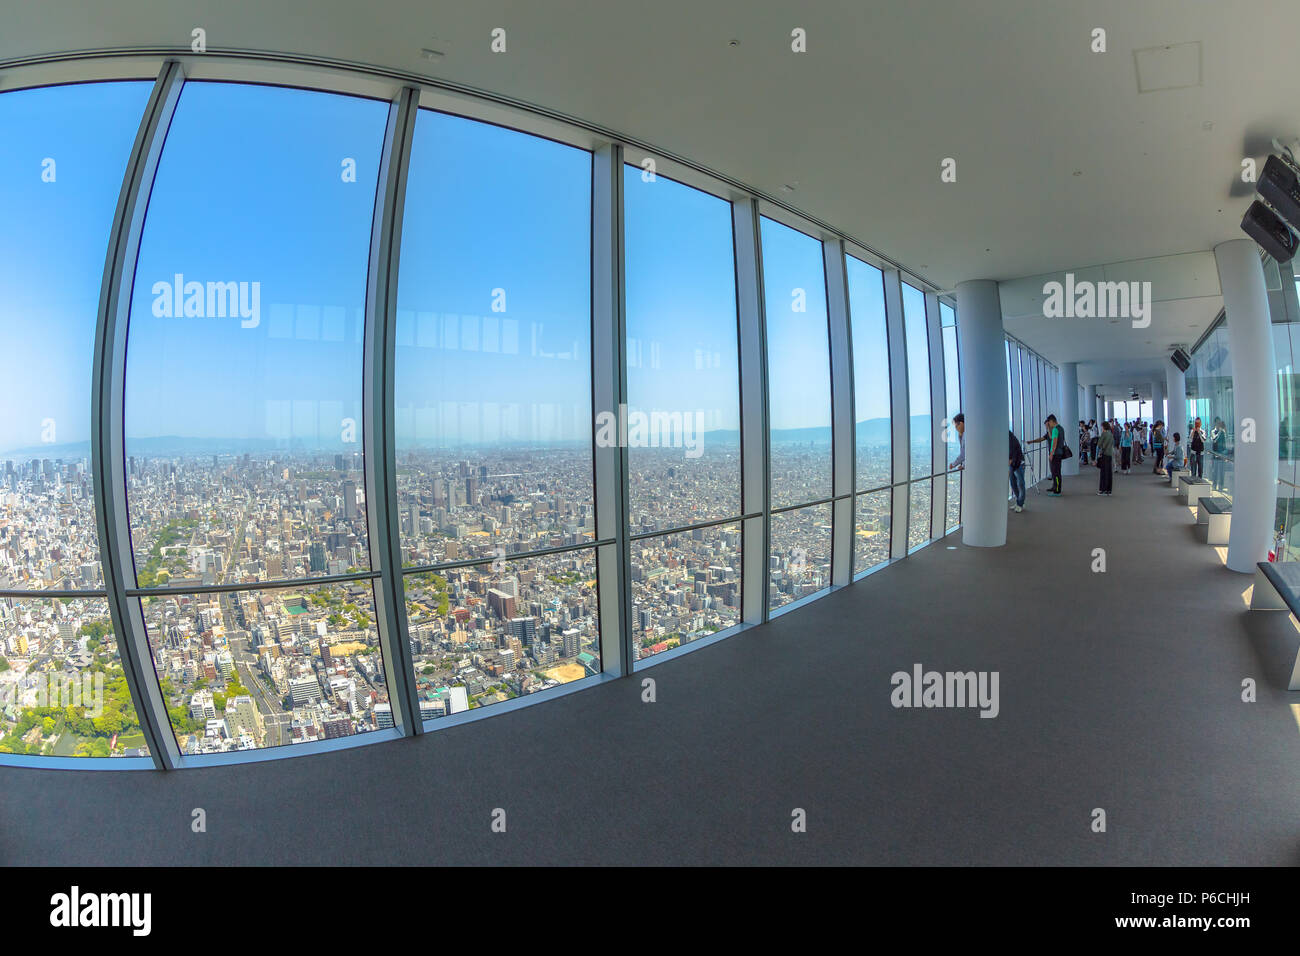 Osaka, Japan - 30. April 2017: Große Fenster innen Aussichtsplattform der Aussichtsplattform auf einem Top von Osaka's Abeno Harukas, den höchsten Wolkenkratzer in Japan. Stockfoto